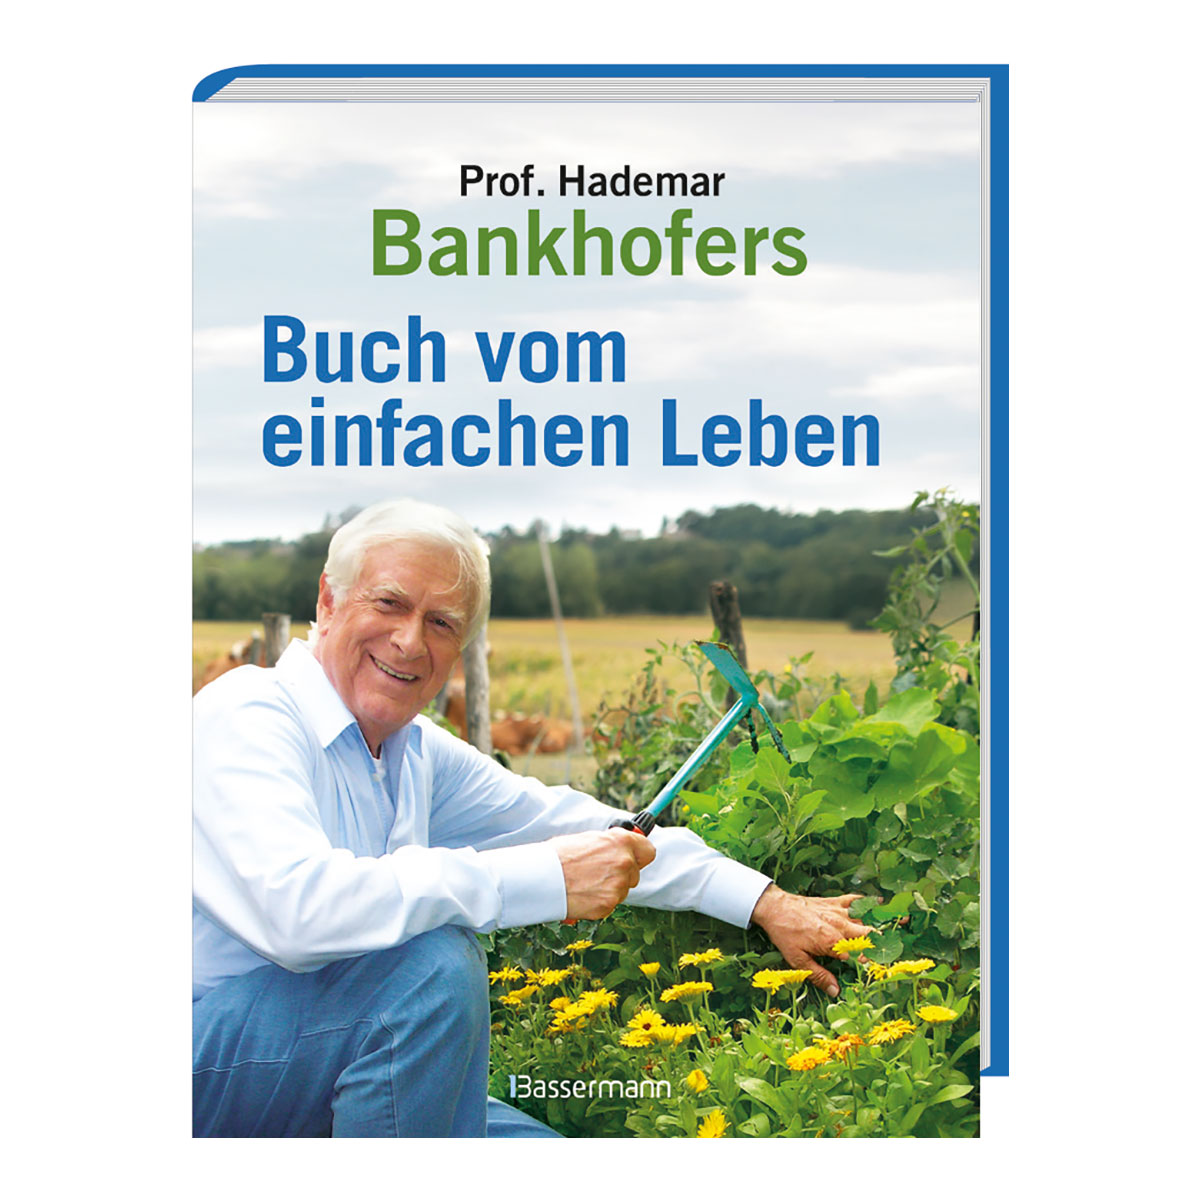 Bankhofers Buch vom einfachen Leben